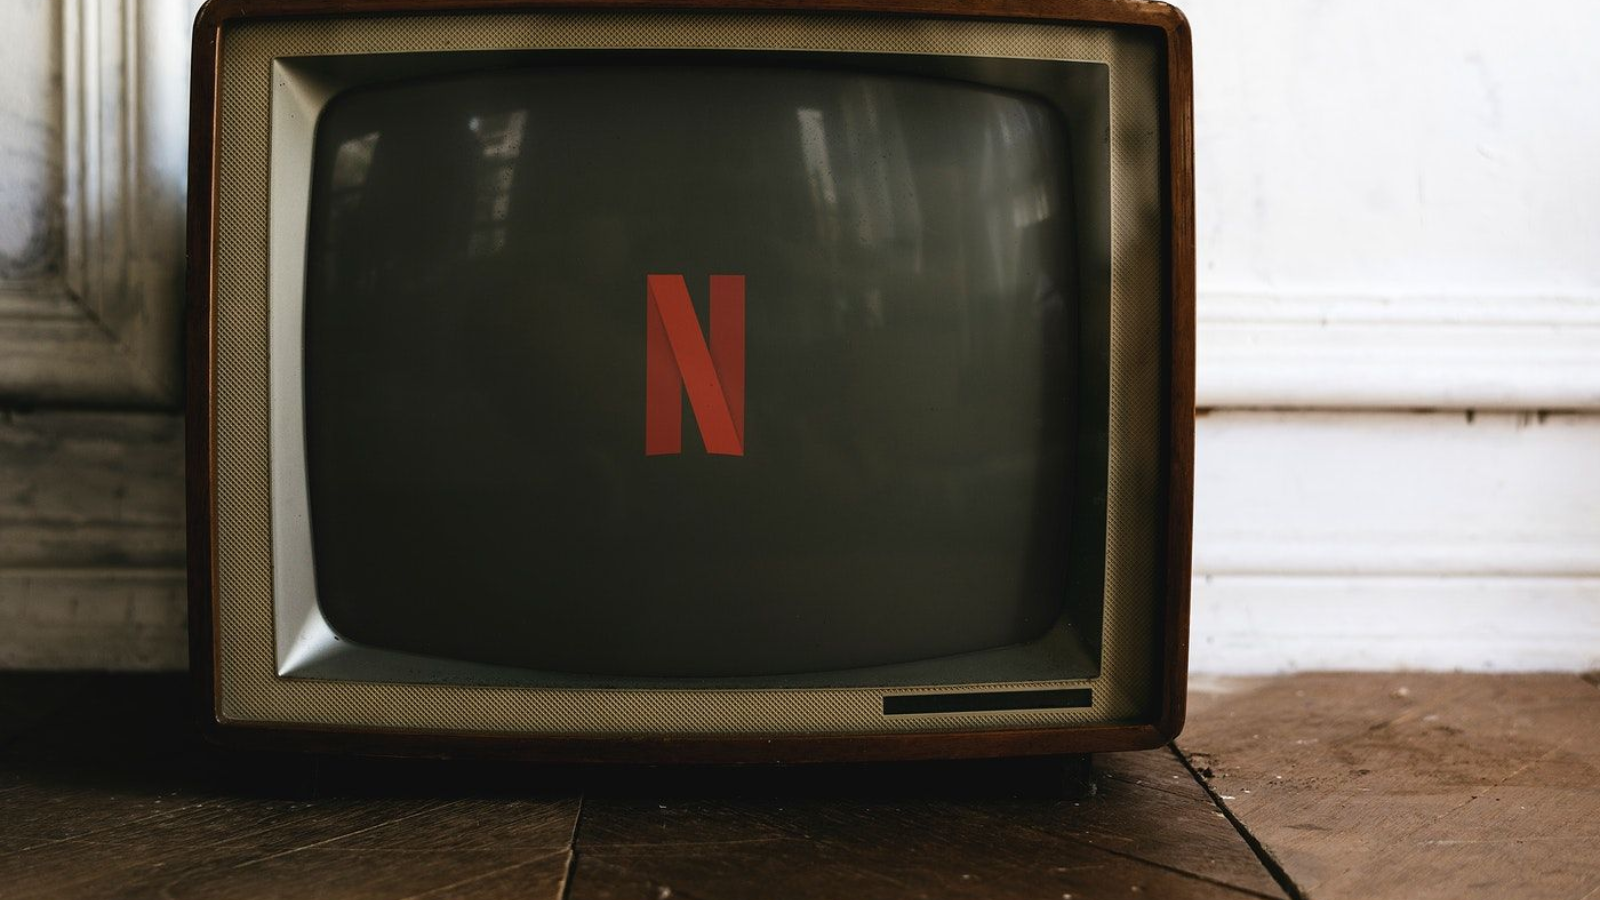 Netflix para Windows 7: saiba como ver filmes online em PCs antigos